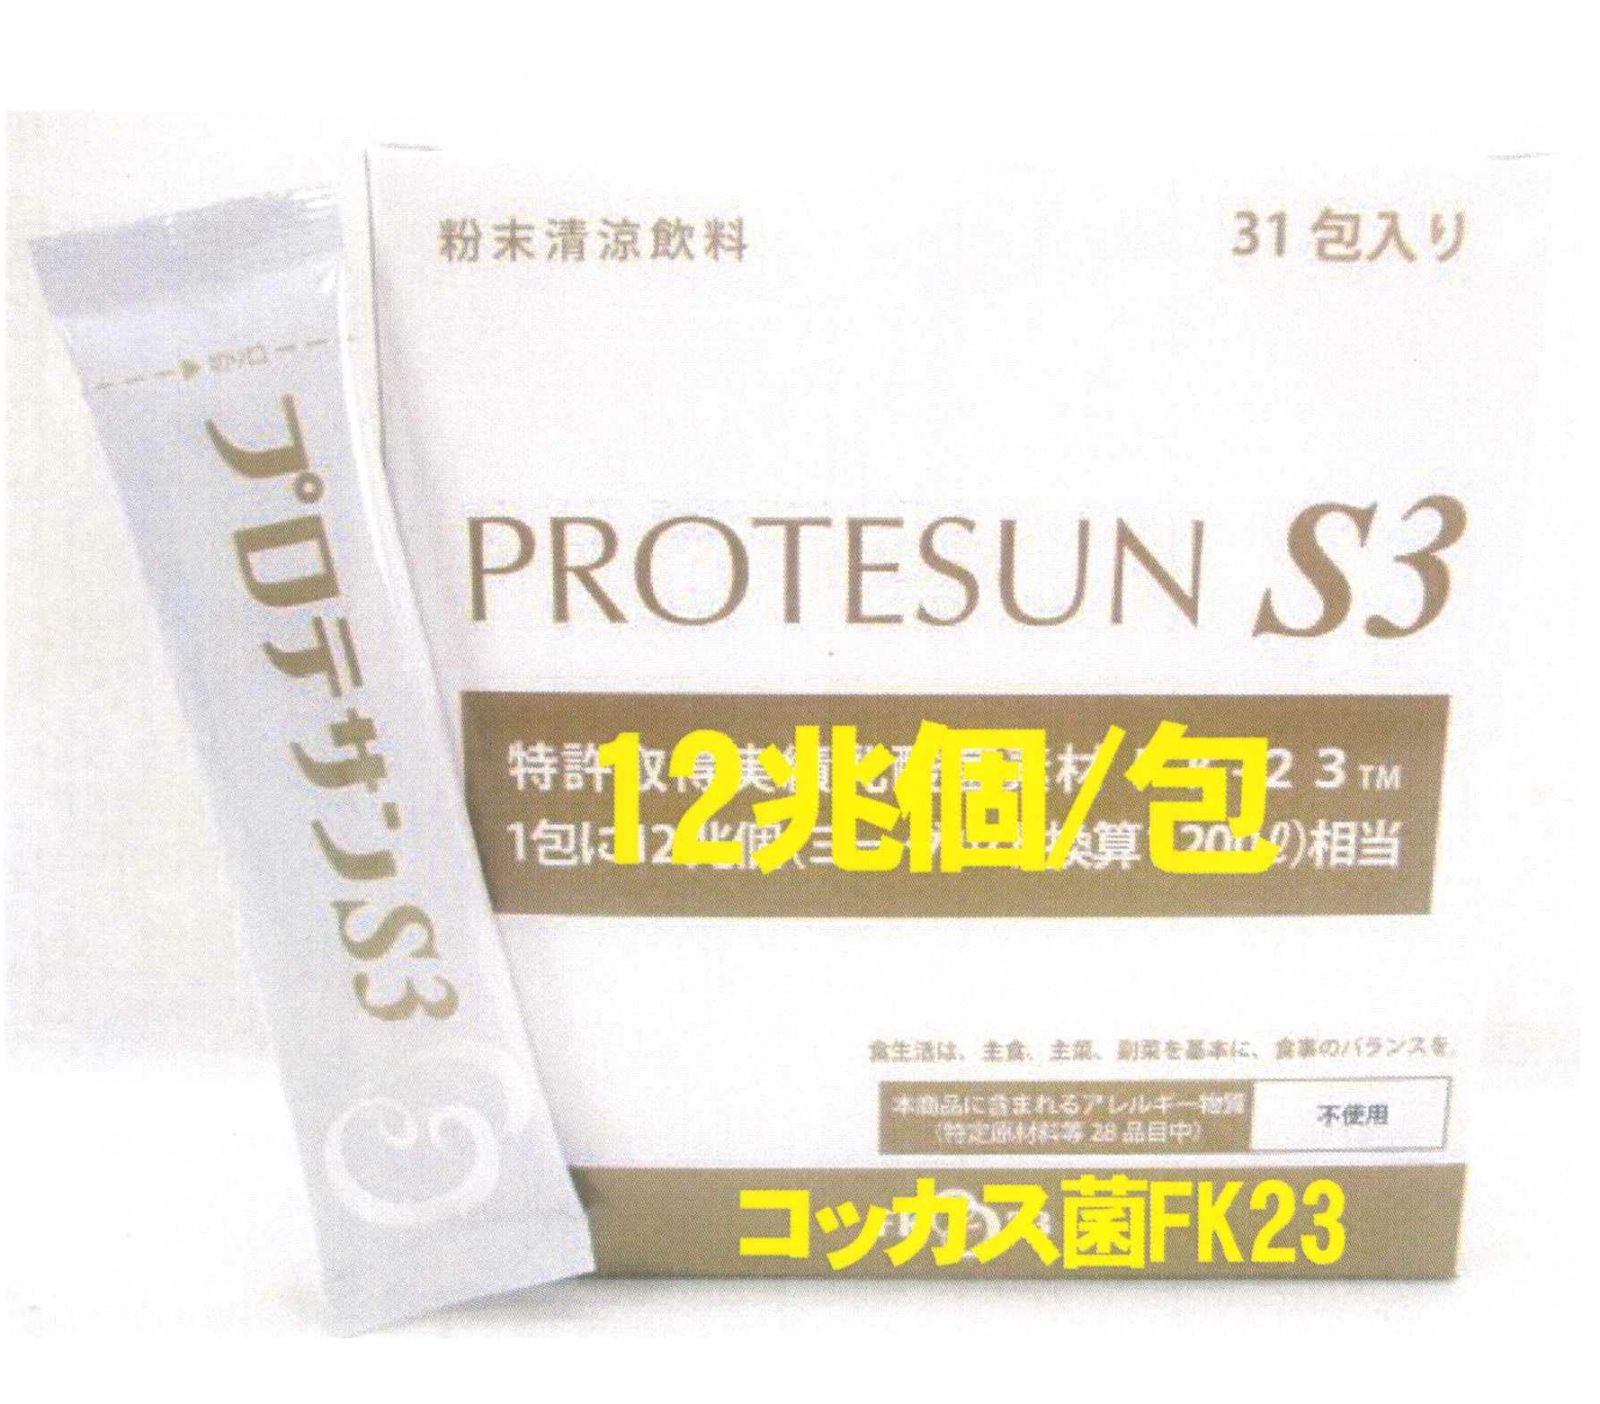 新プロテサンS3(31包入)x1箱、ニチニチ製薬・ヒト由来コッカス菌1包12兆個 - メルカリ